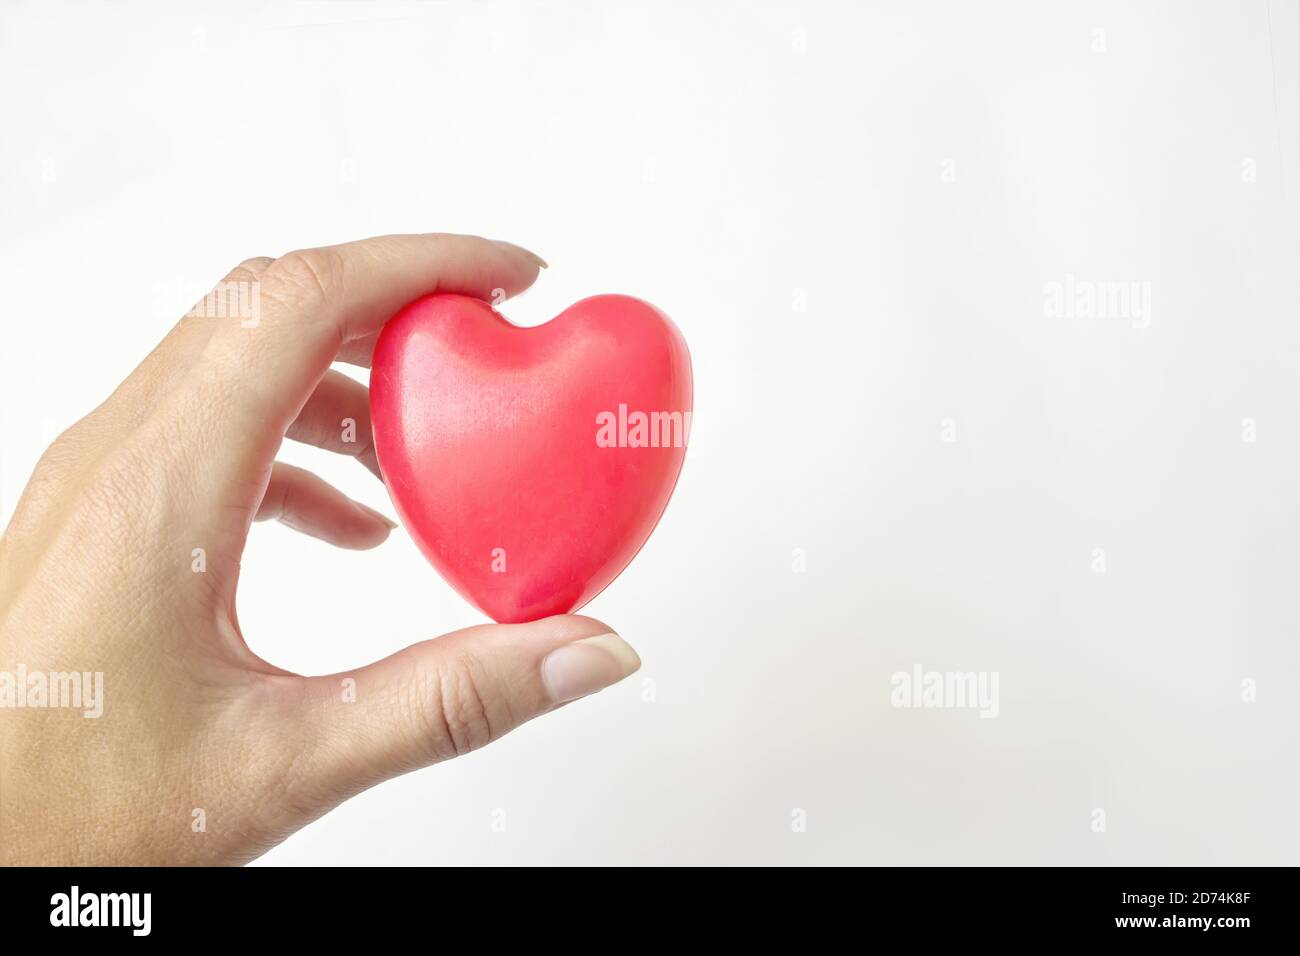 La mano della donna tiene il cuore rosso sullo sfondo bianco. Assicurazione sanitaria, donazione, concetto di salvataggio della vita. Idea giornata di salute del cuore del mondo Foto Stock